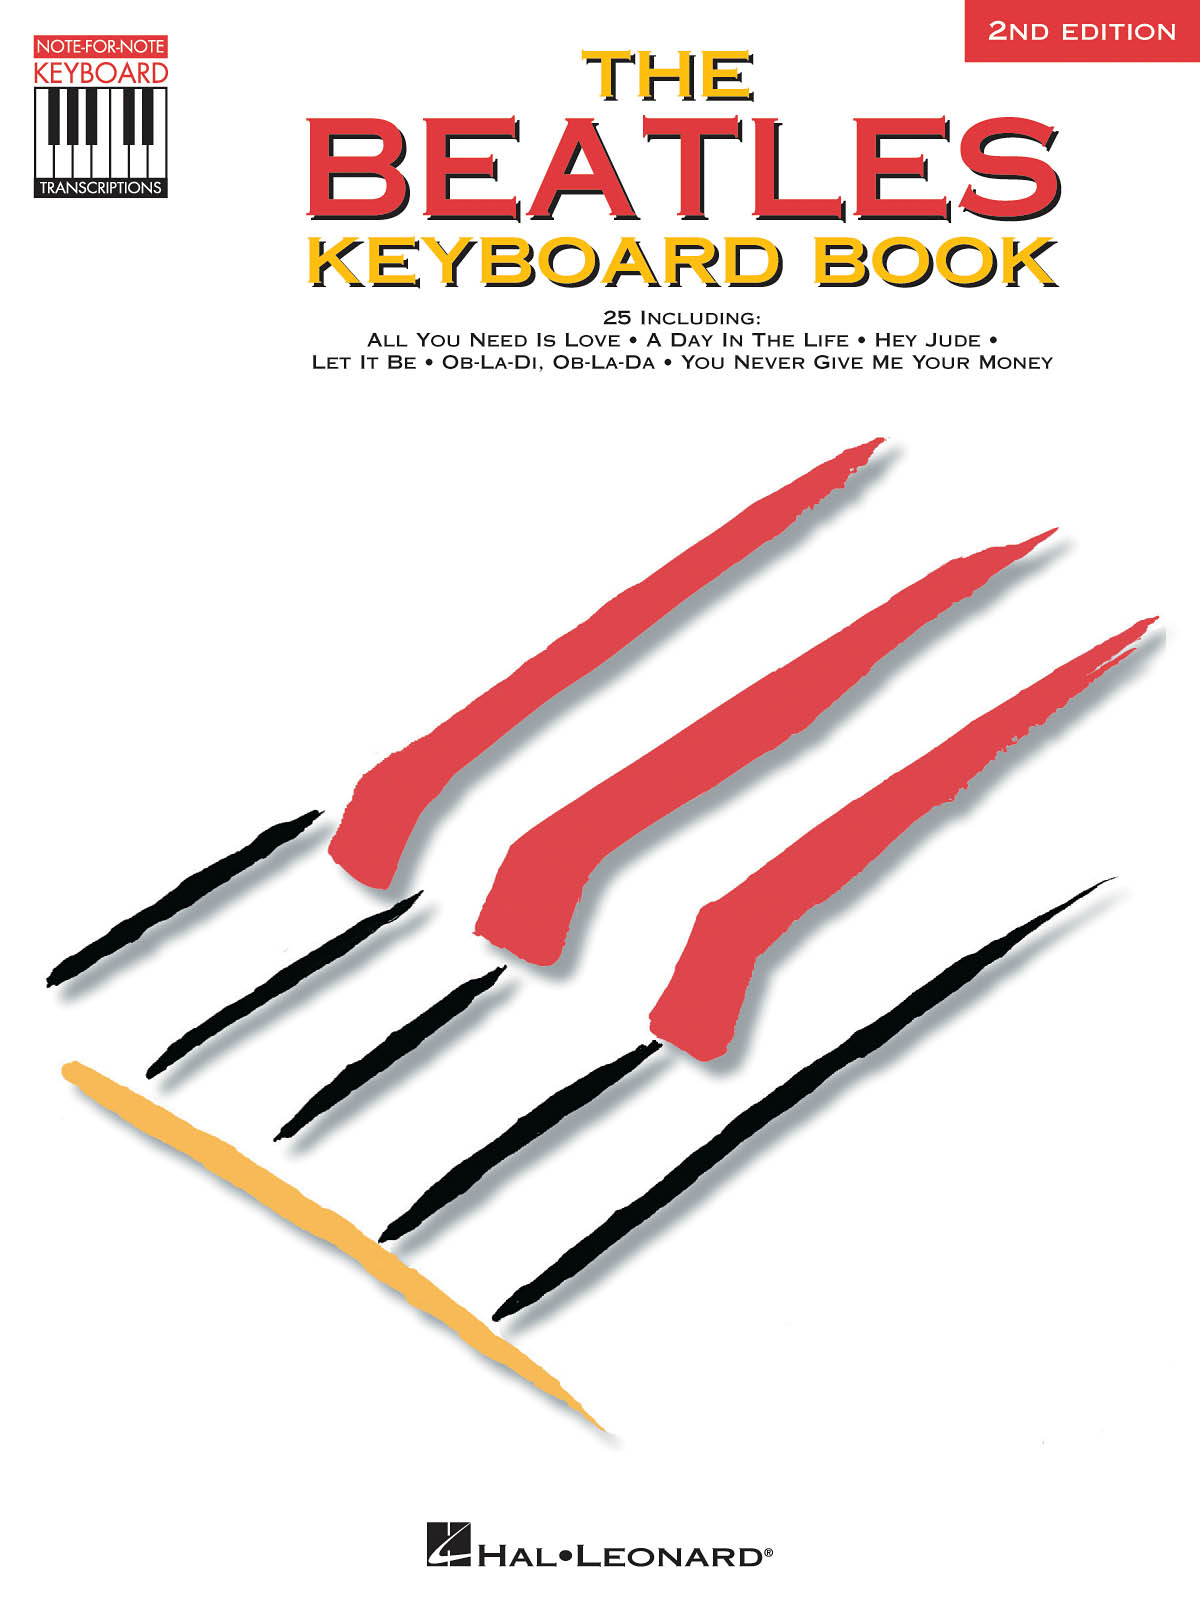 The Beatles: The Beatles Keyboard Book: Keyboard: Artist Songbook